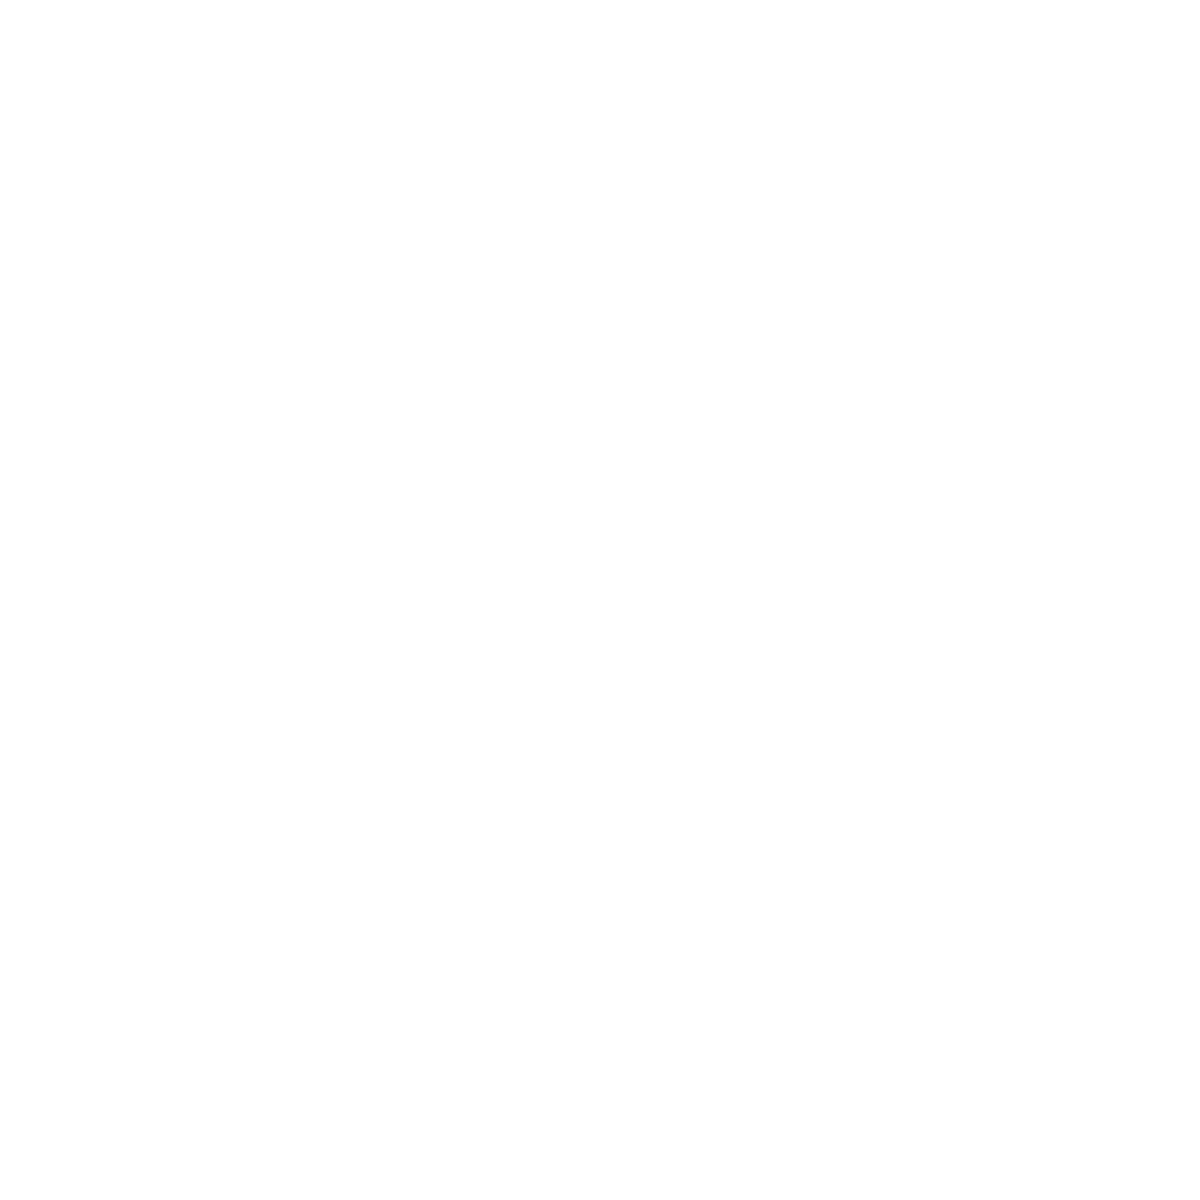 Devopsy logo